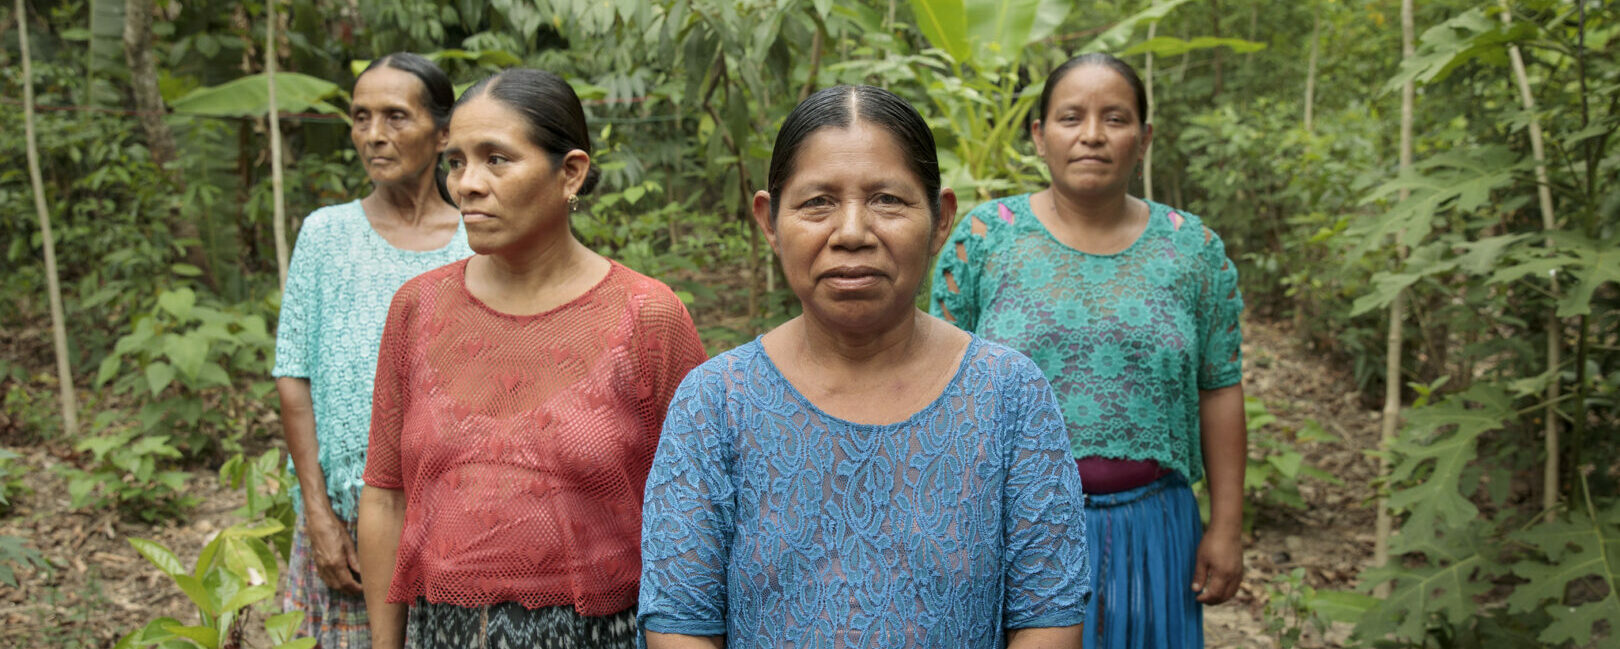 Frauen in Guatemala